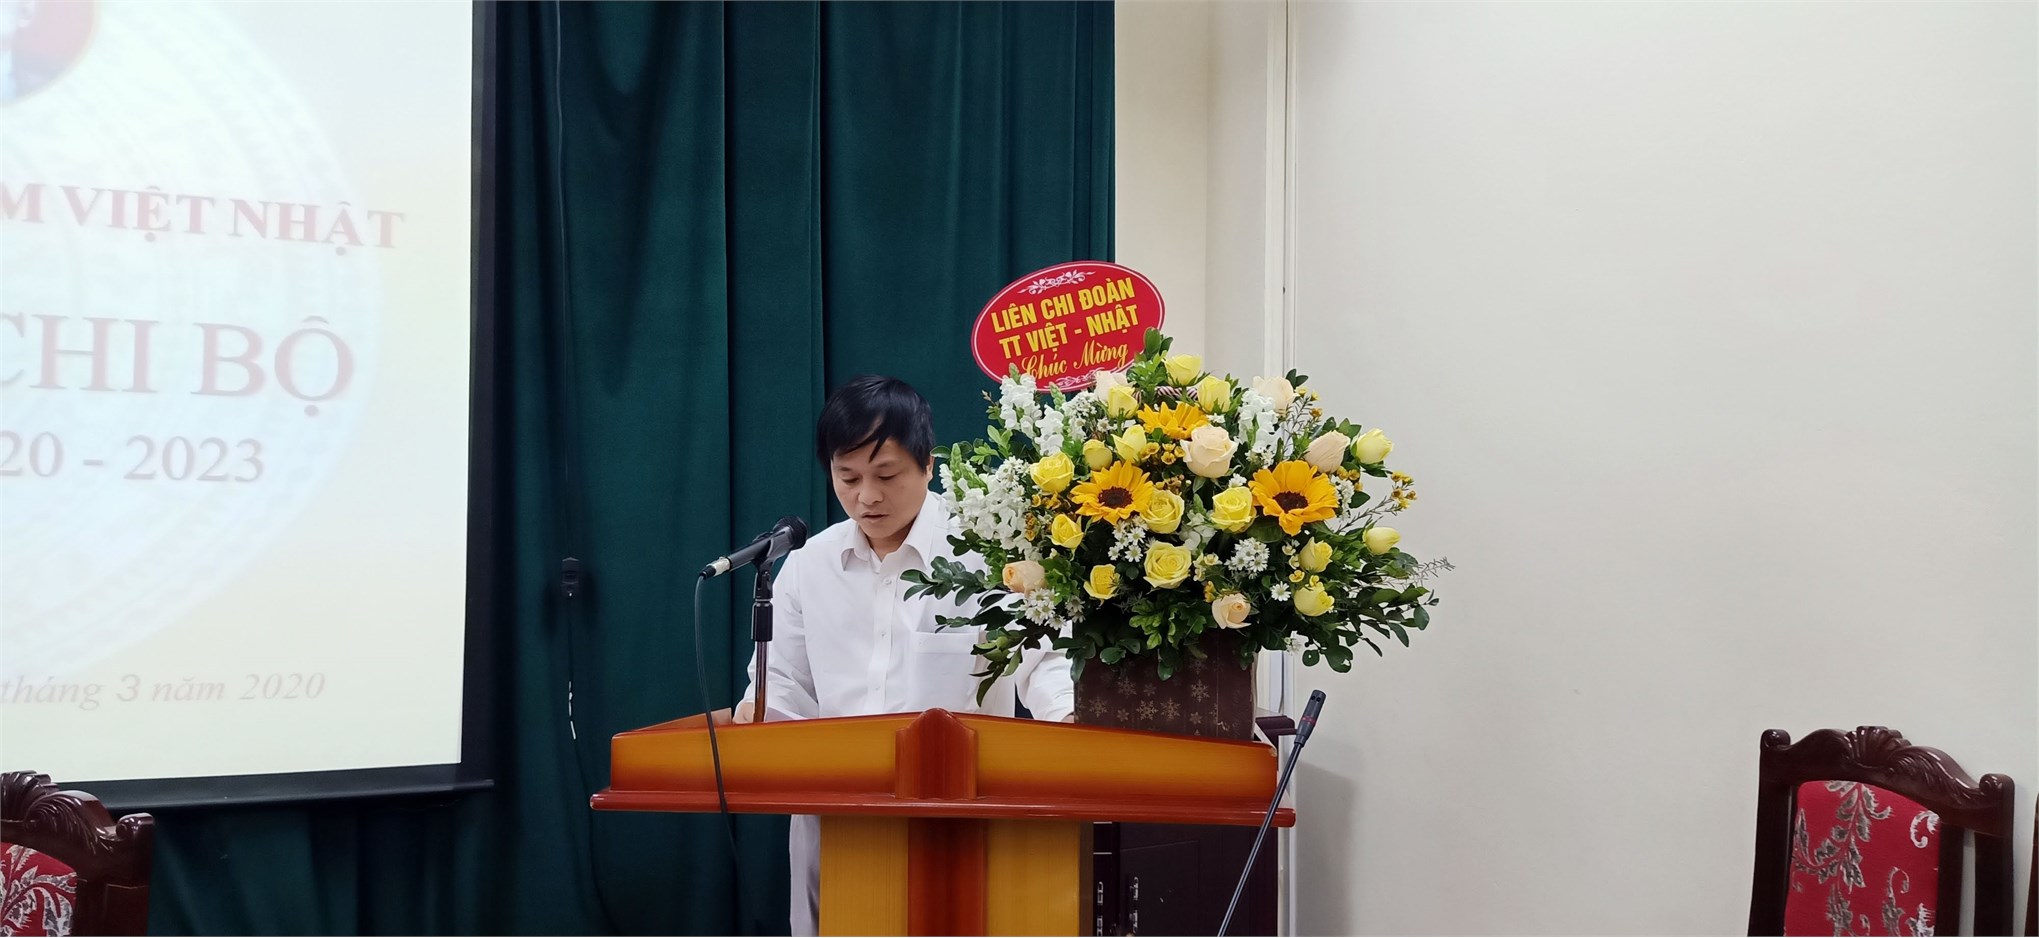 Đại hội chi bộ Trung tâm Việt – Nhật nhiệm kỳ 2020 – 2023